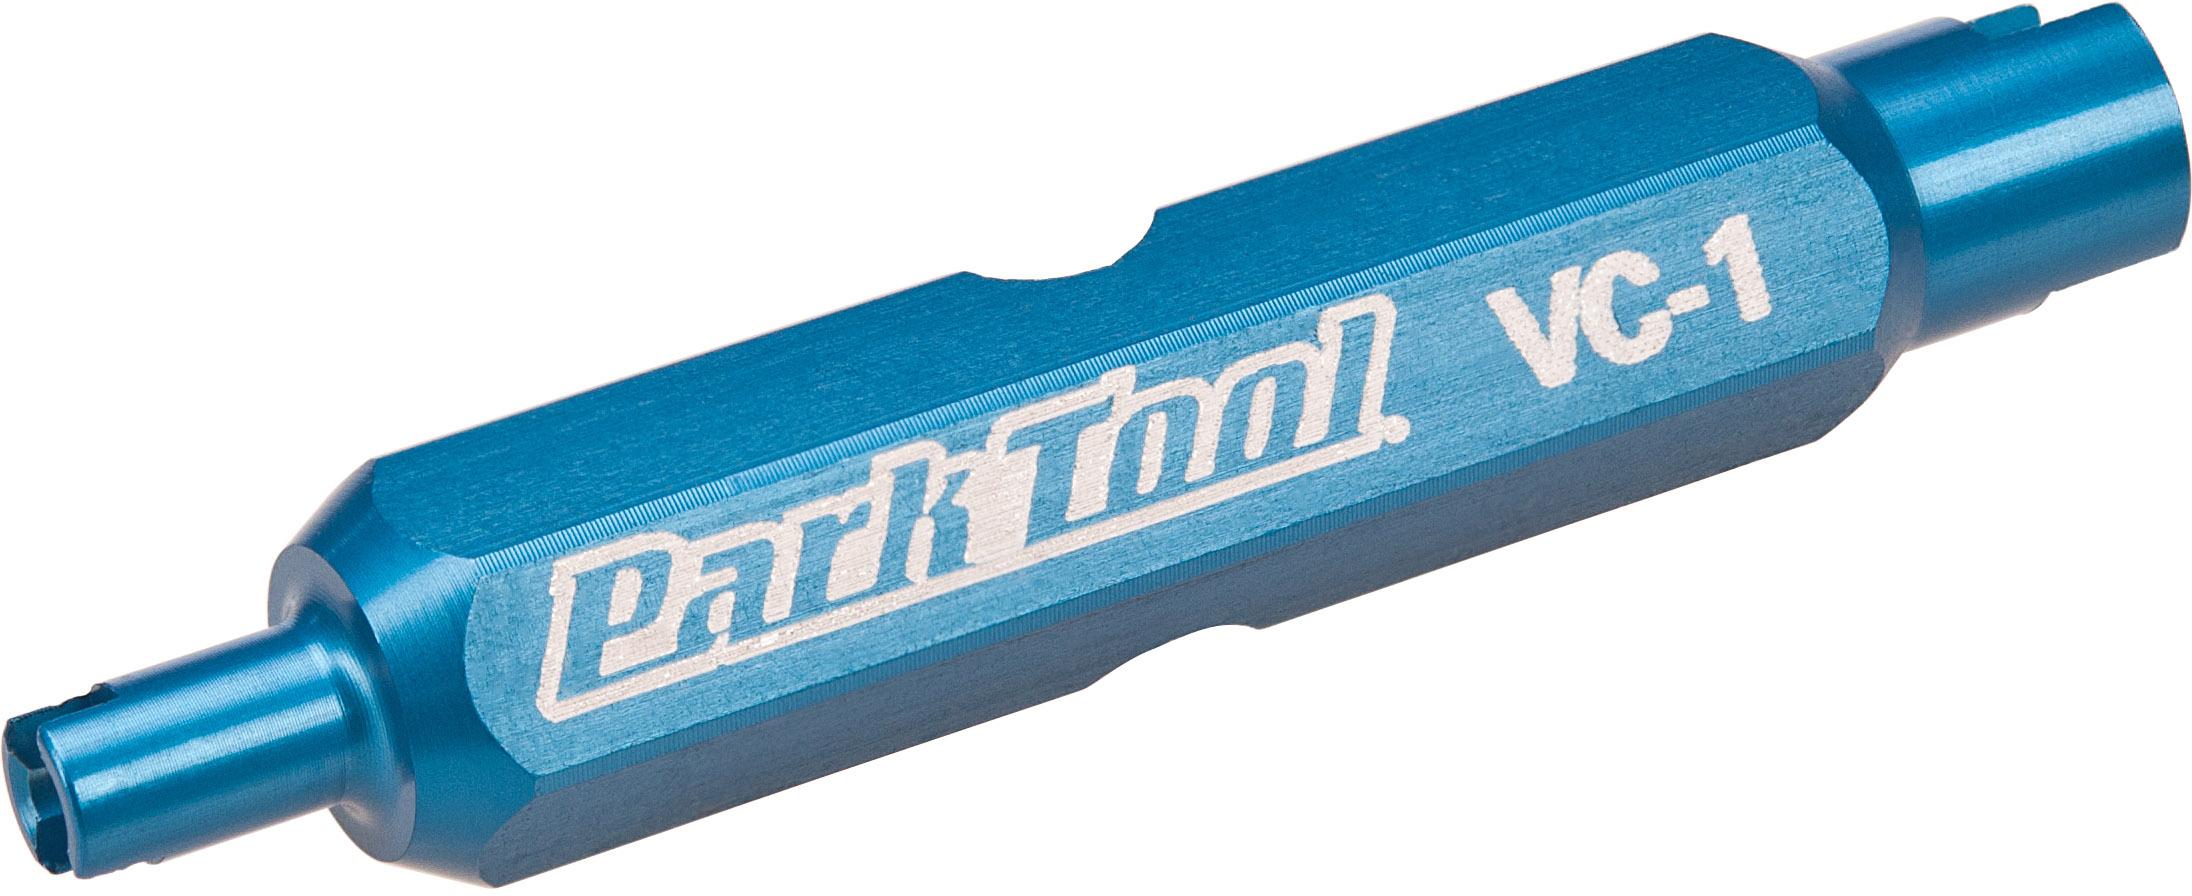 Park Tool Valve Core Tool Vc-1  Blue